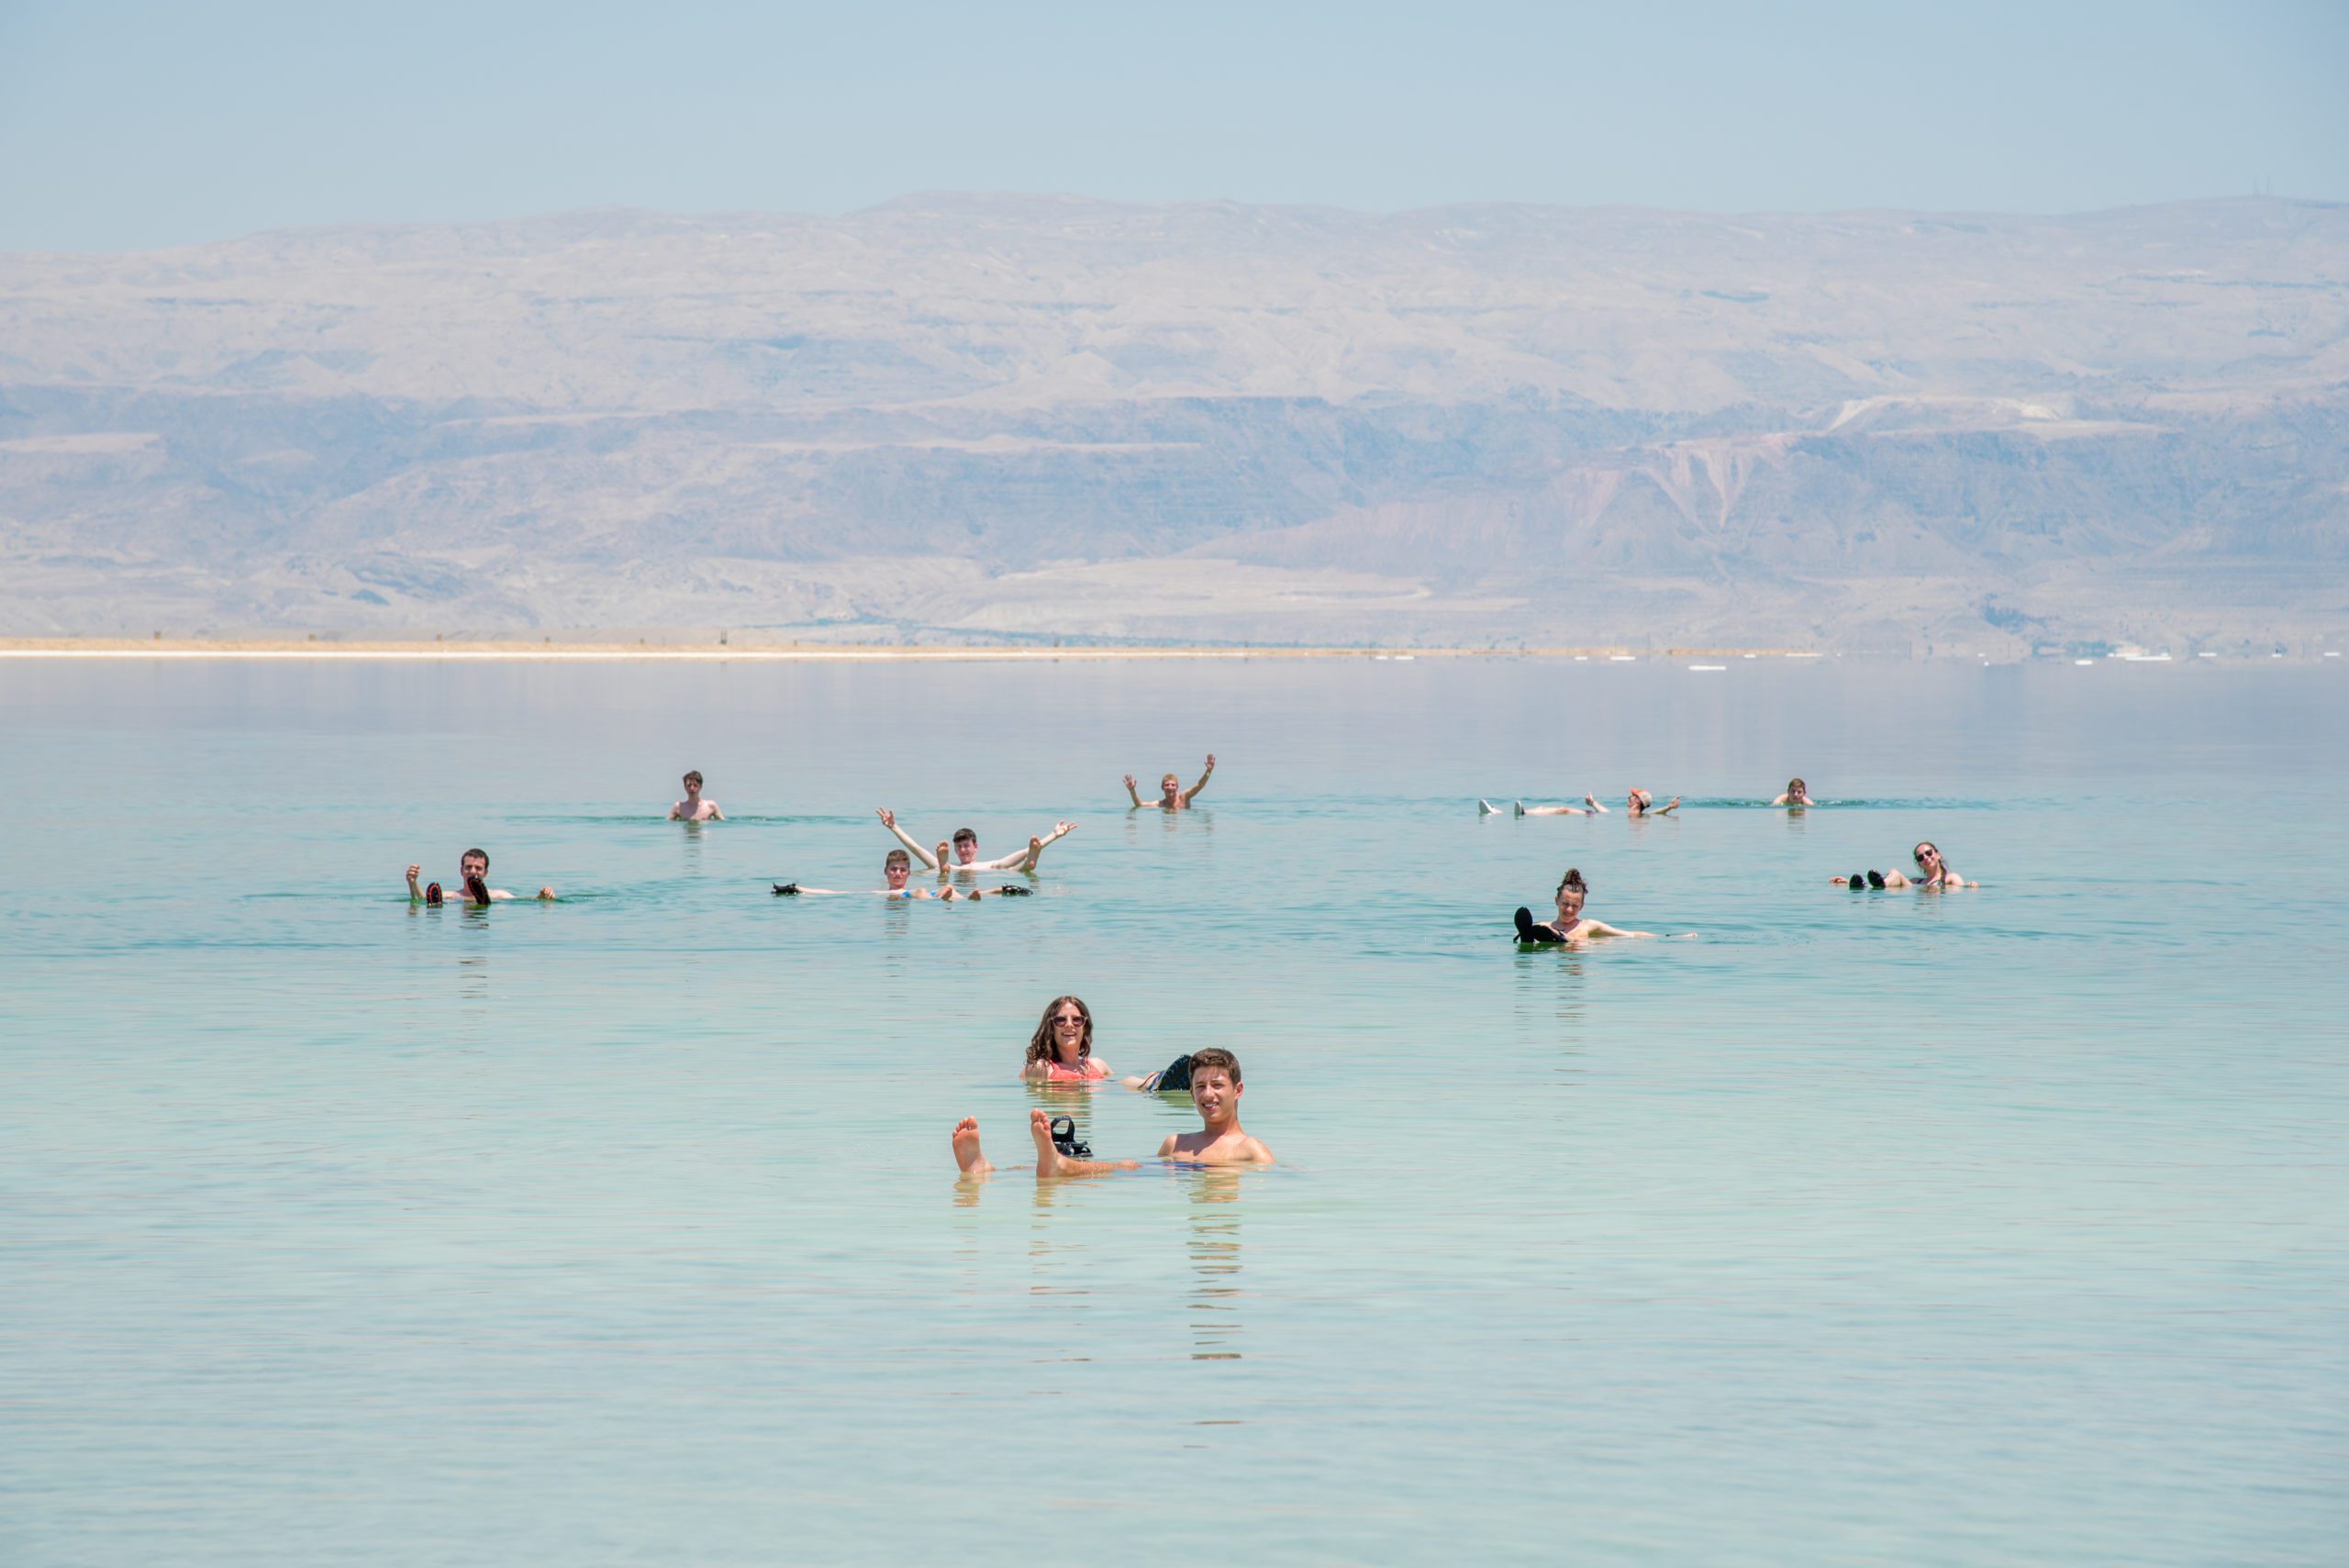 Teens floating in the Dead Sea in Israel